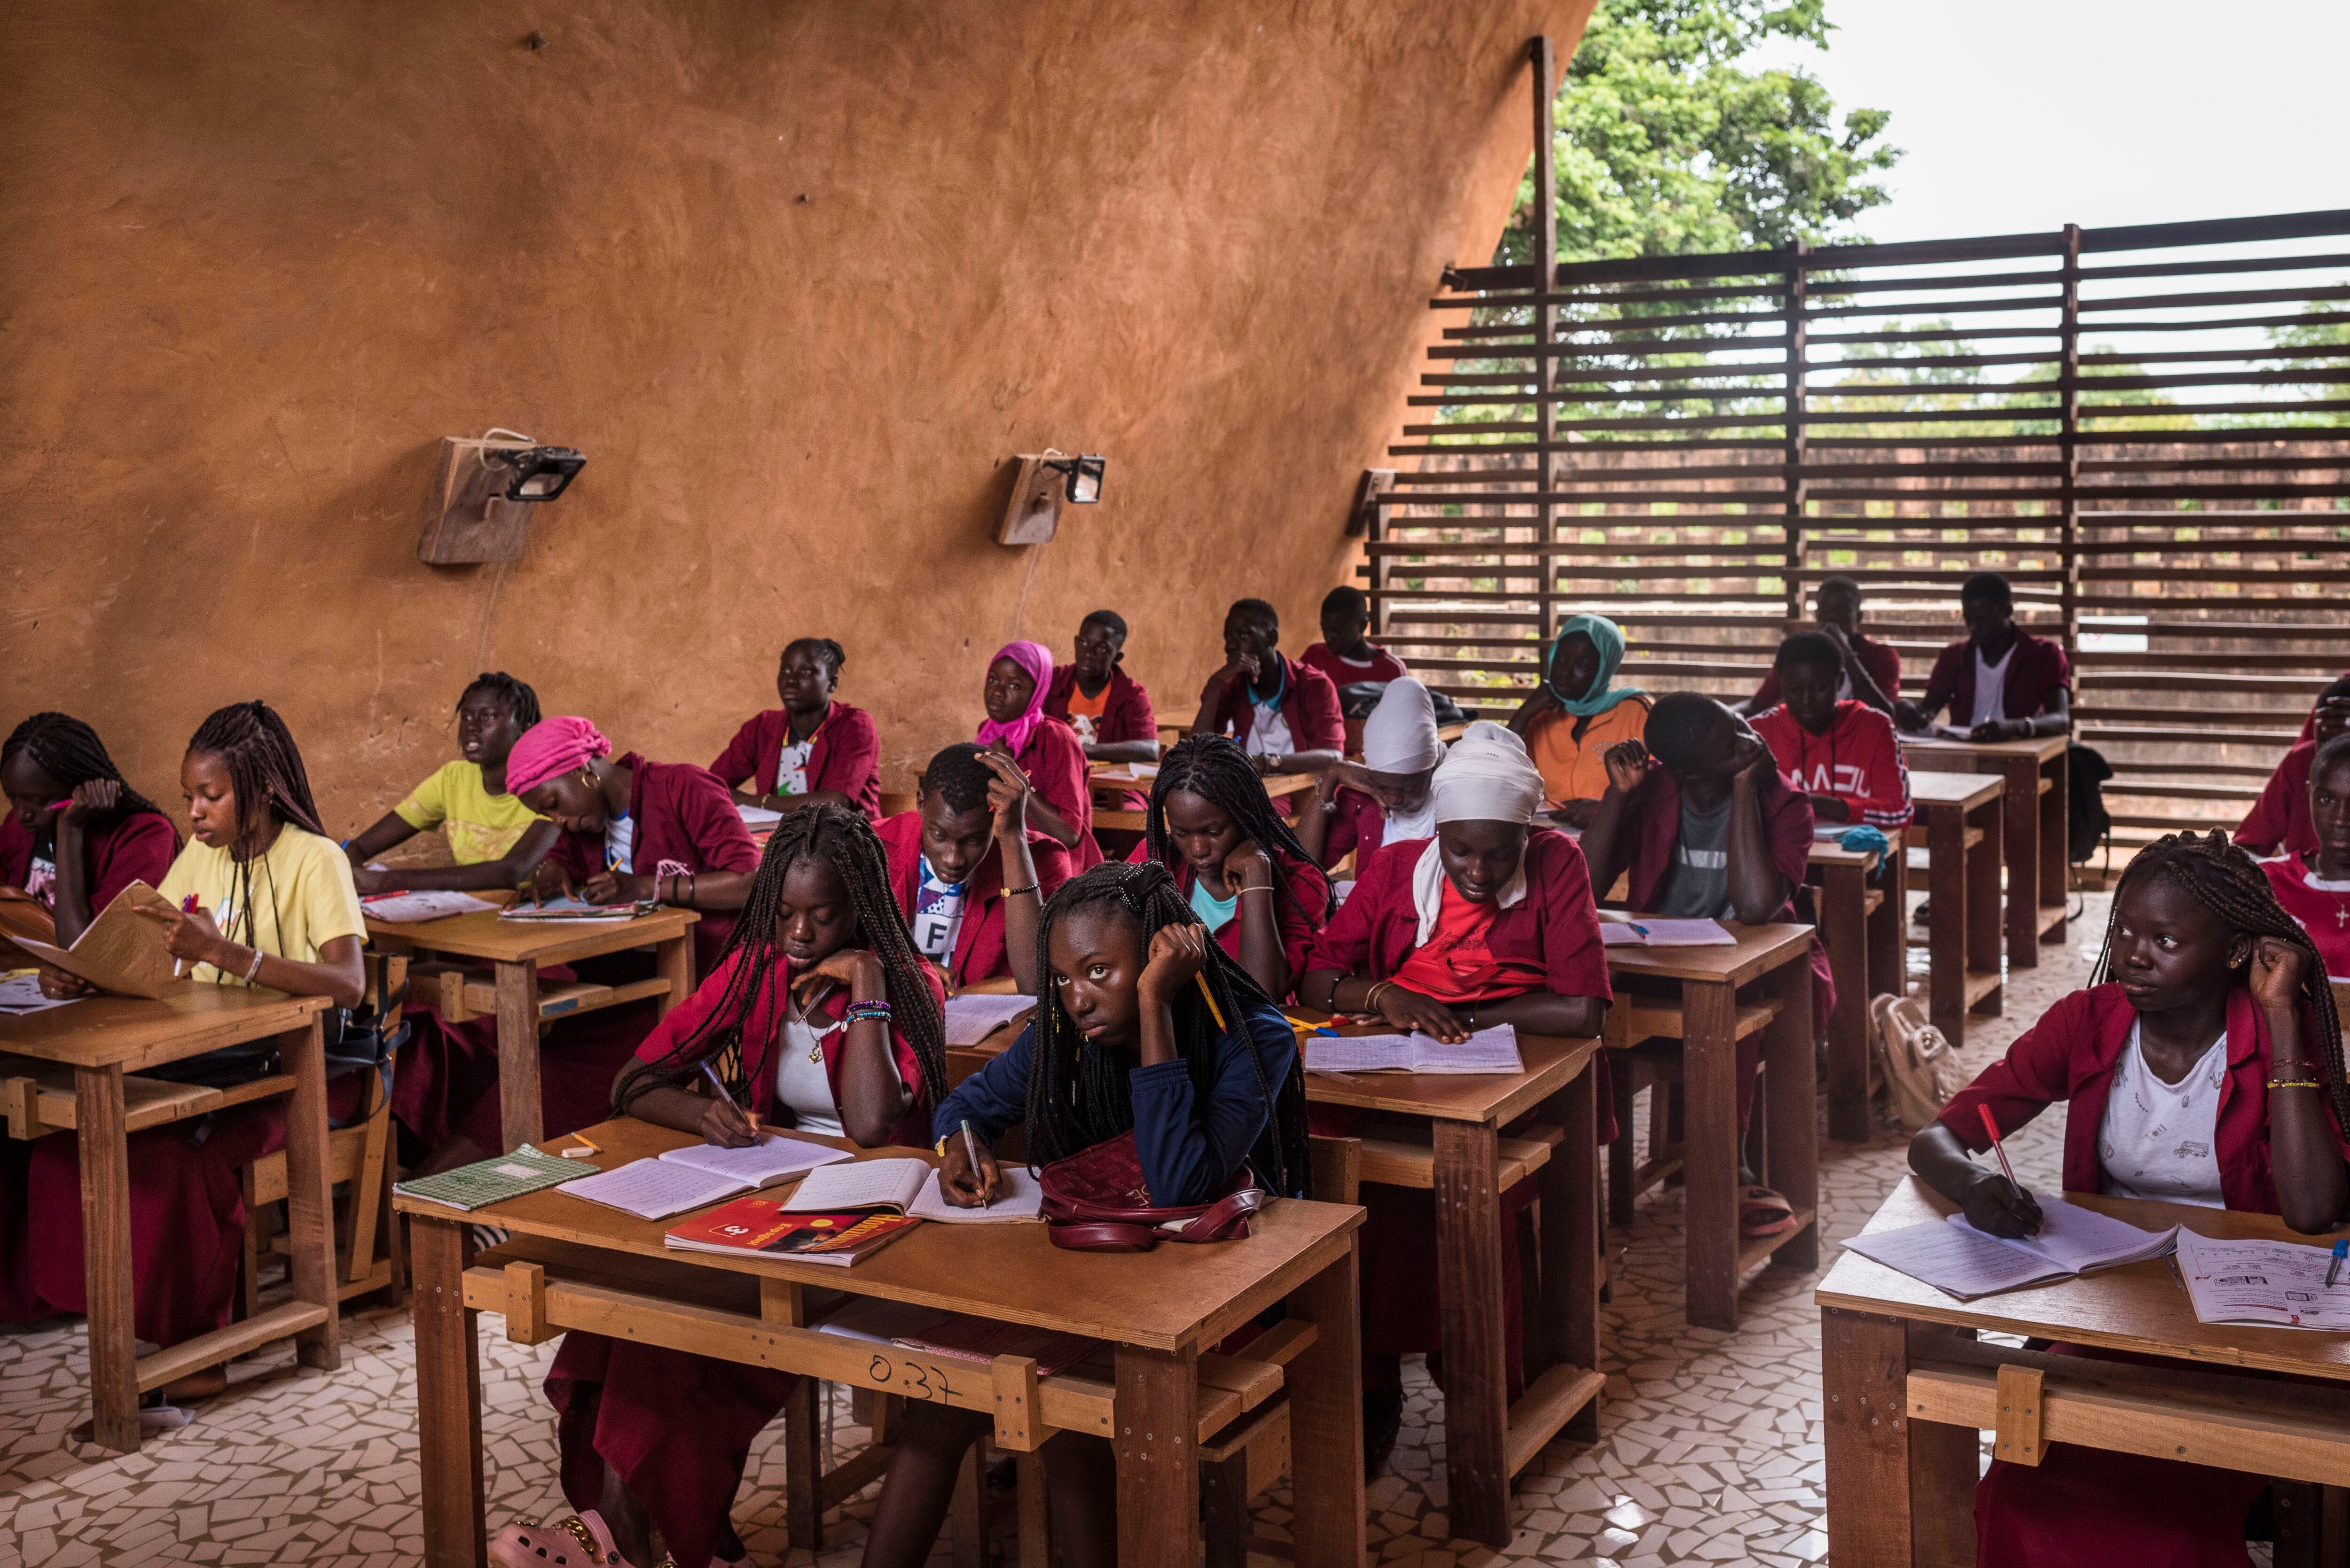 En la escuela estudian actualmente un total de 464 alumnos, con una ratio máxima de estudiantes por clase de 30 o 32. La media de niños por aula en Senegal es de 50, pero en algunos colegios se llega hasta a 80, así que Kamanar es una rara excepción.